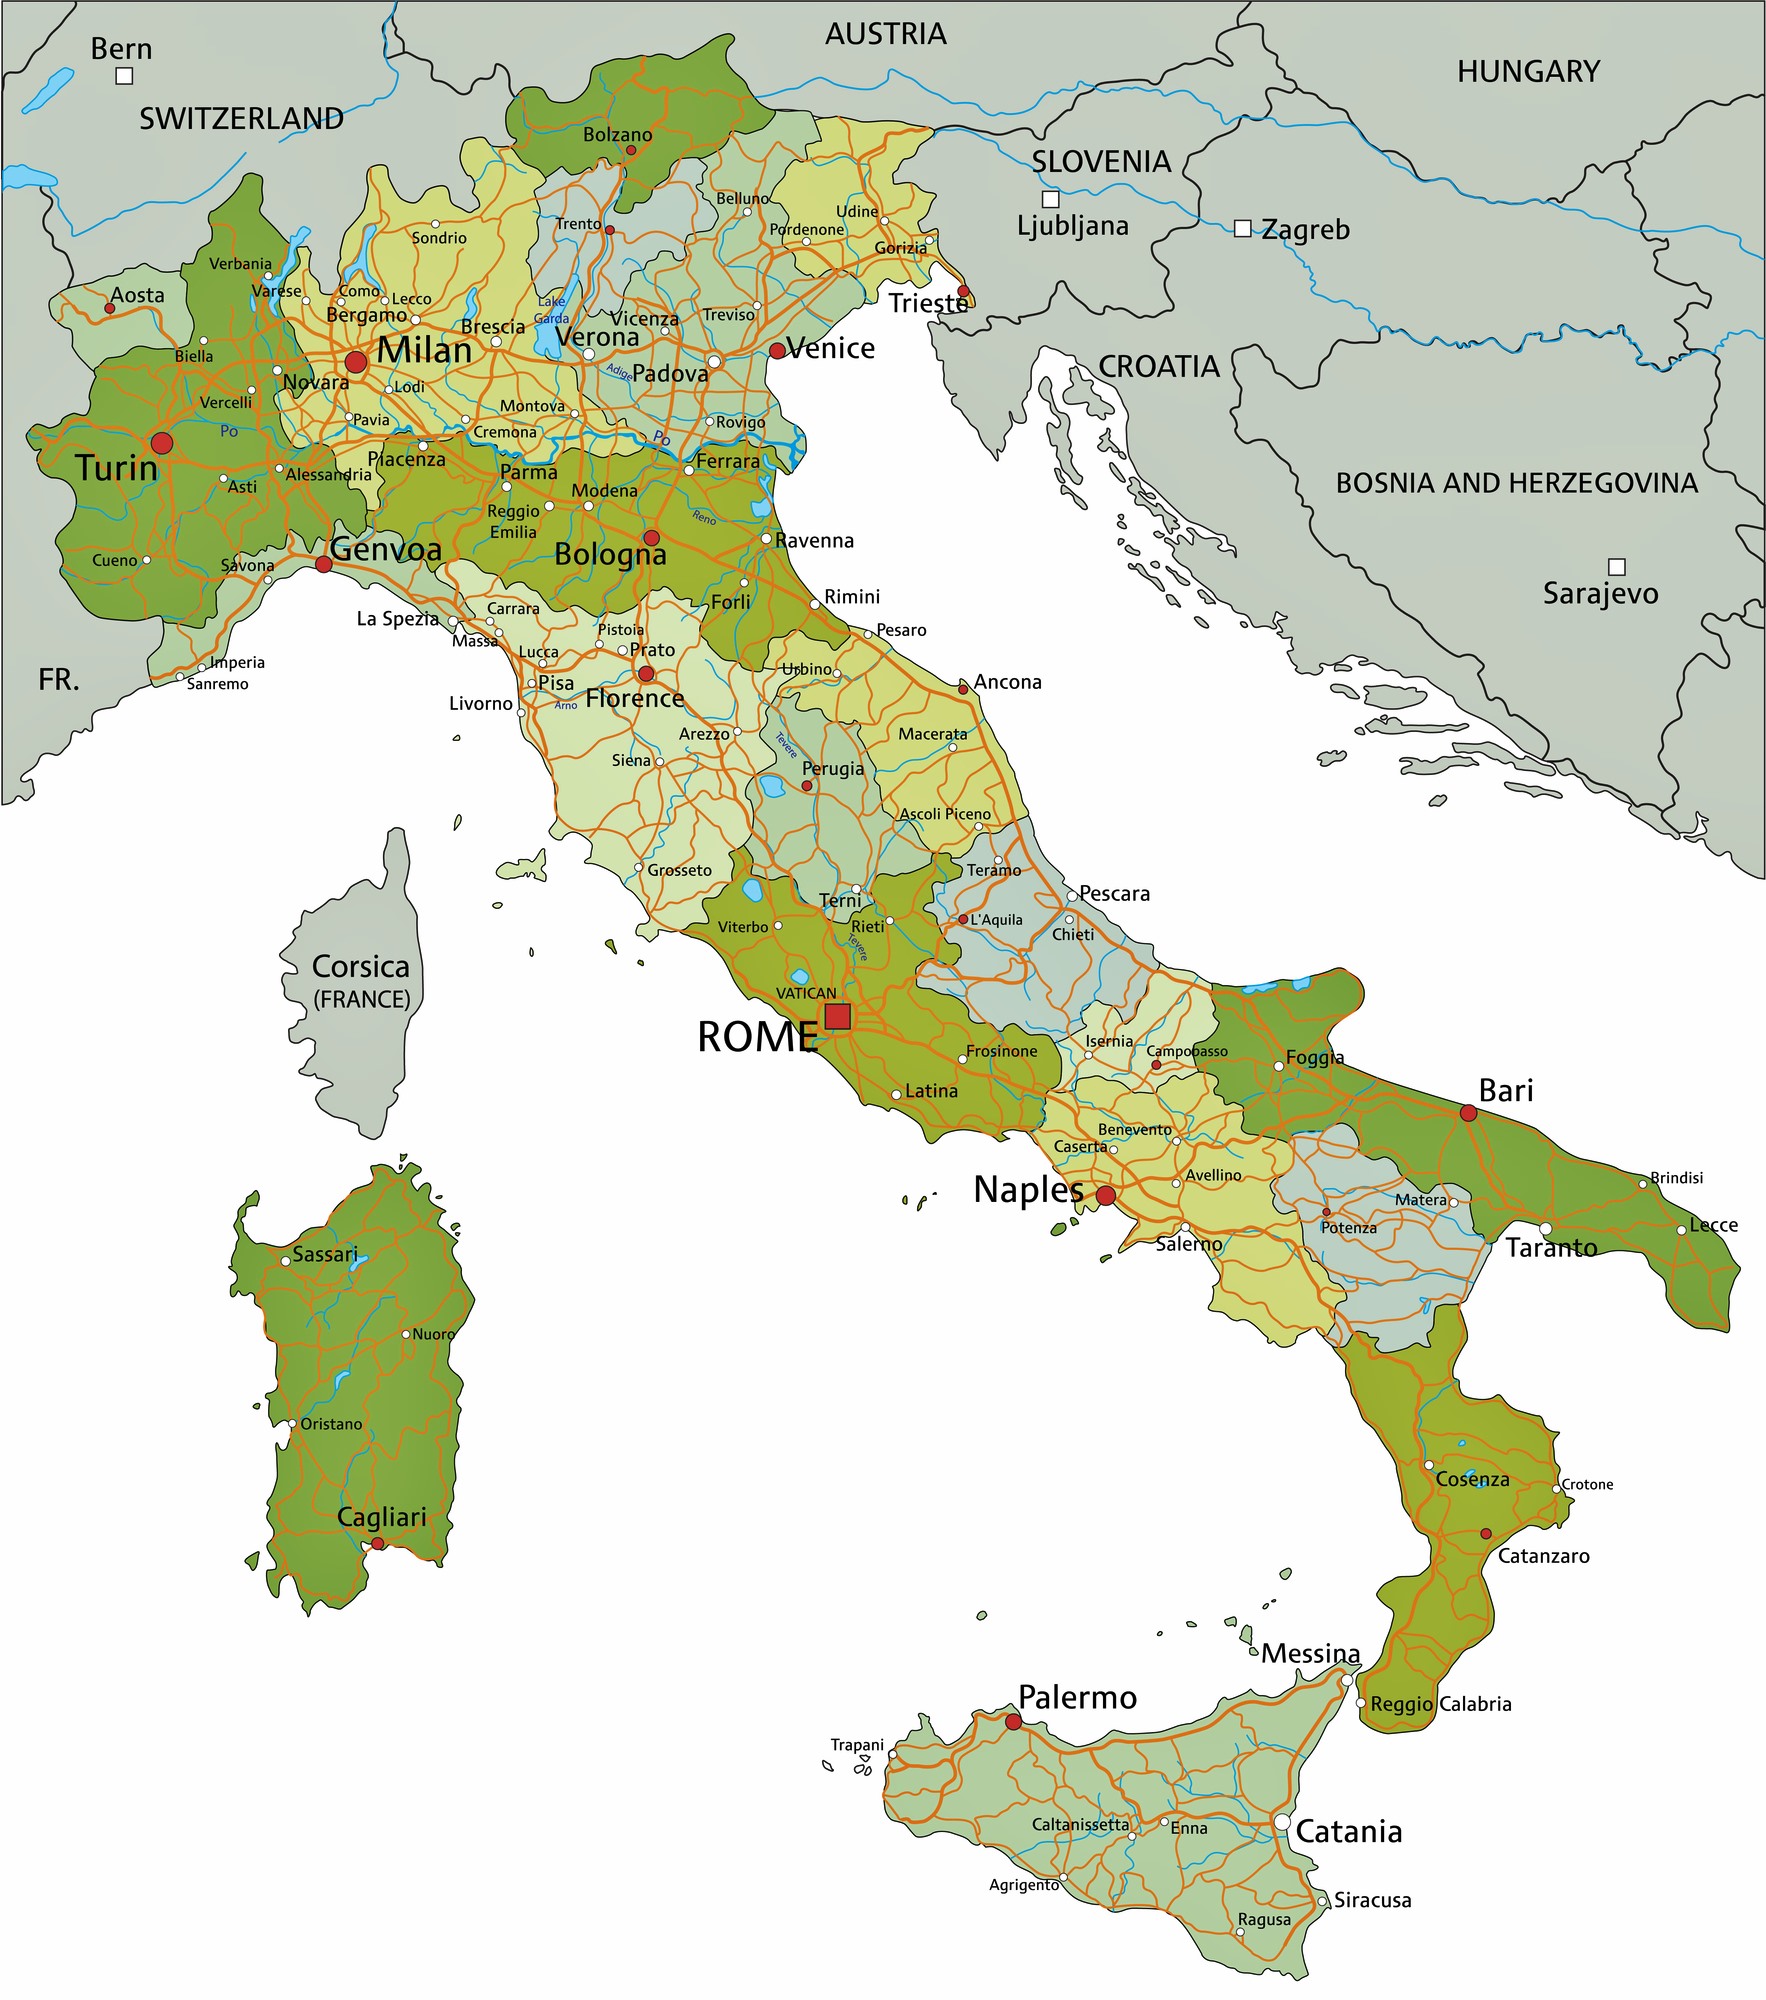 karten-von-italien-karten-von-italien-zum-herunterladen-und-drucken